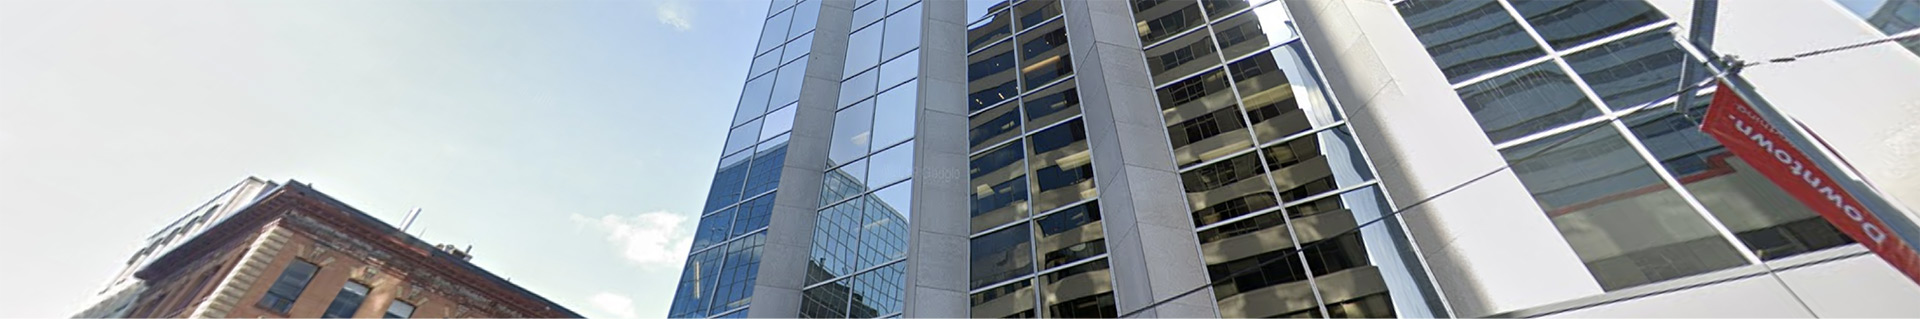 Le pavillon du Centre de leadership pour cadres de l’École de gestion Telfer situé au 99 rue Bank au centre-ville d’Ottawa